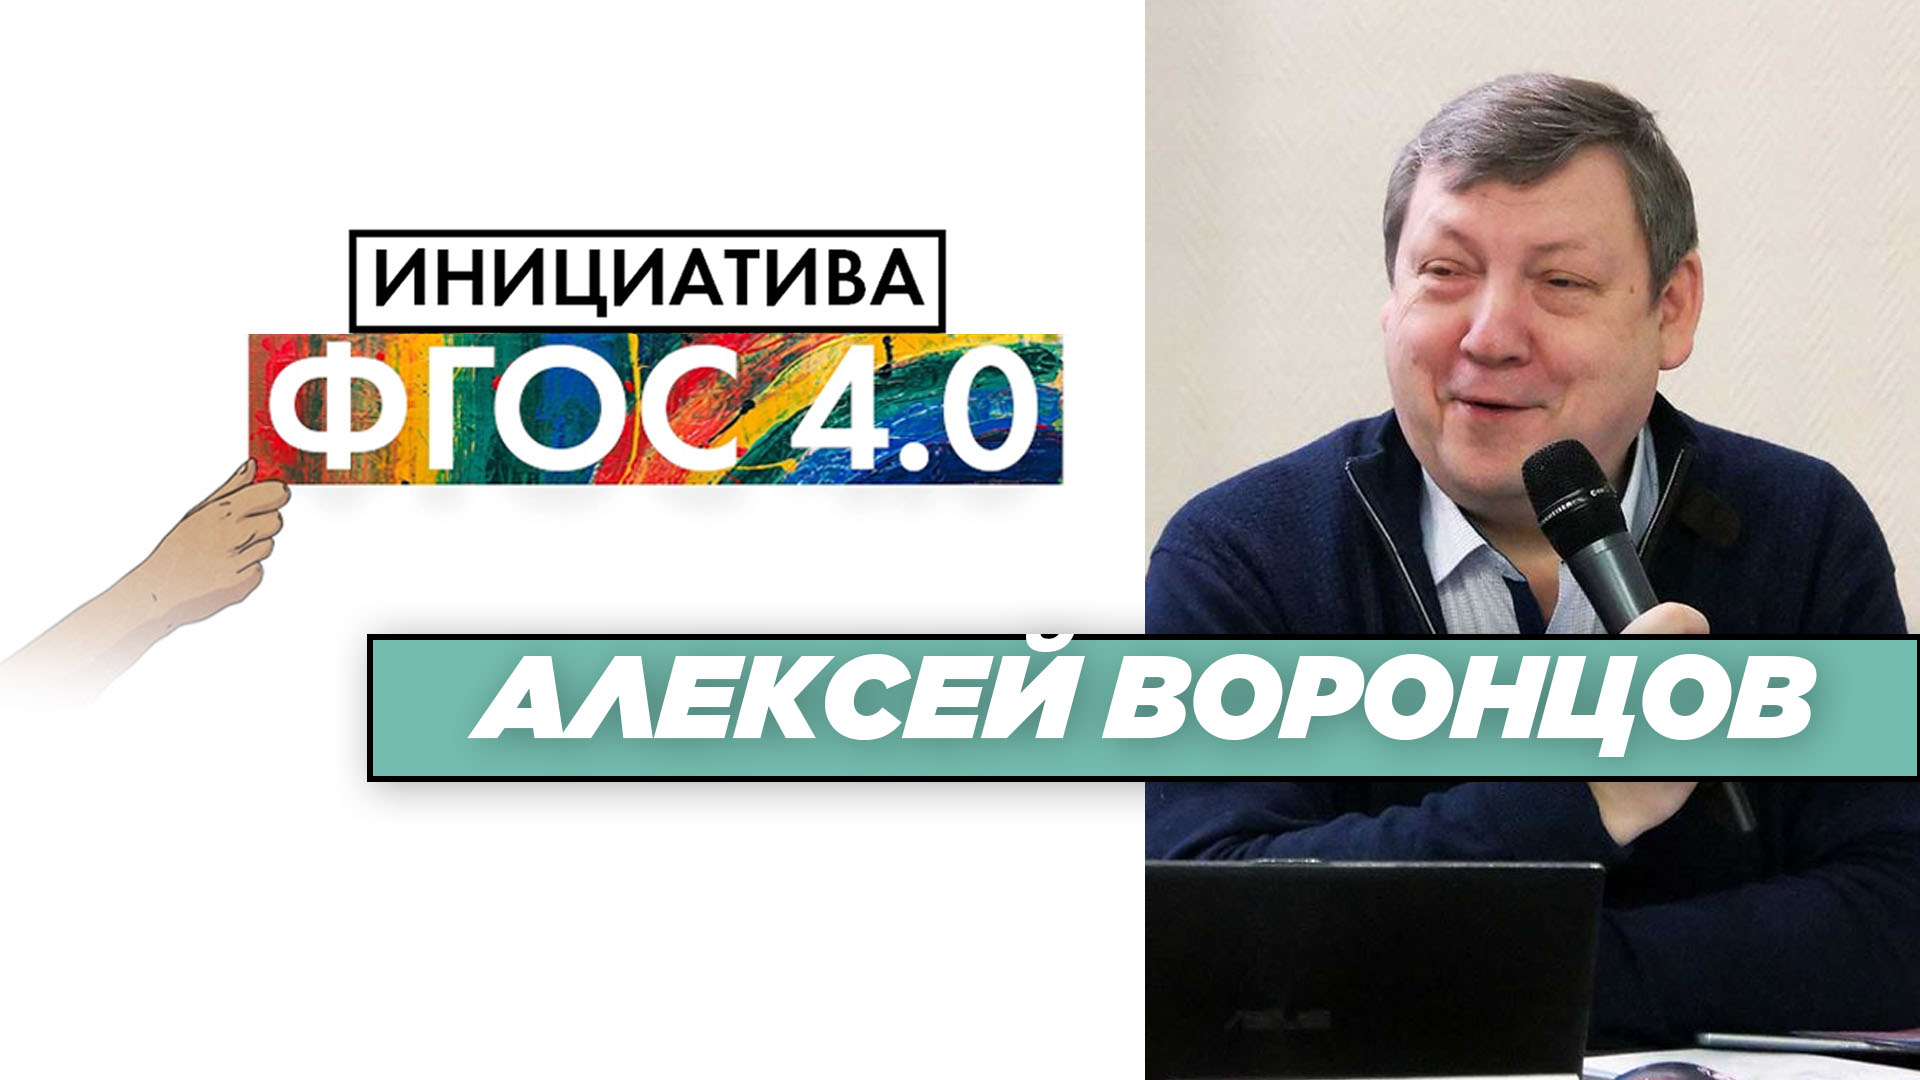 Алексей Воронцов: «Инициатива ФГОС 4.0». Результаты